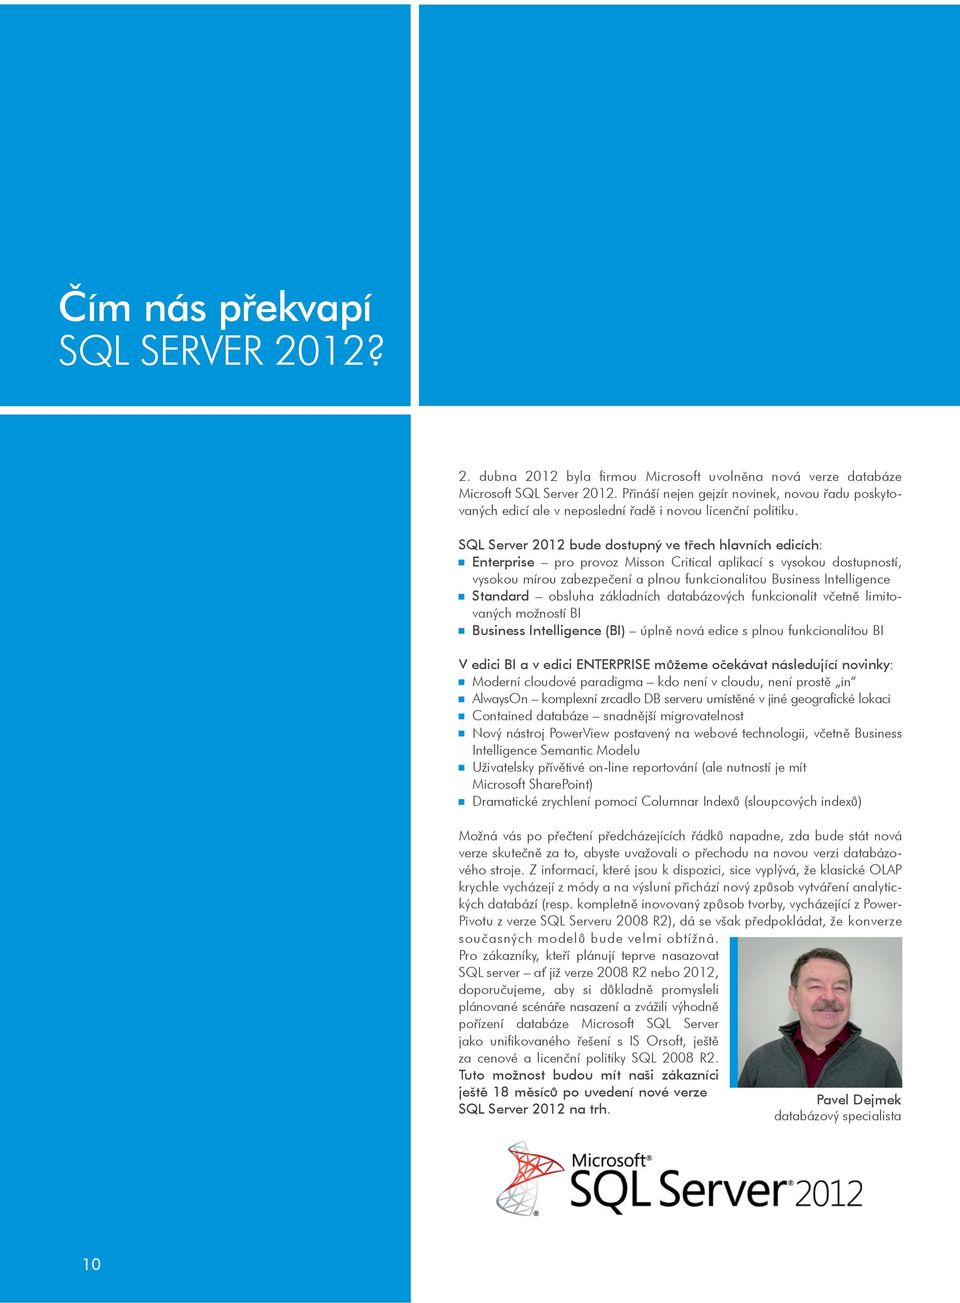 SQL Server 2012 bude dostupný ve tøech hlavních edicích: Enterprise pro provoz Misson Critical aplikací s vysokou dostupností, vysokou mírou zabezpeèení a plnou funkcionalitou Business Intelligence